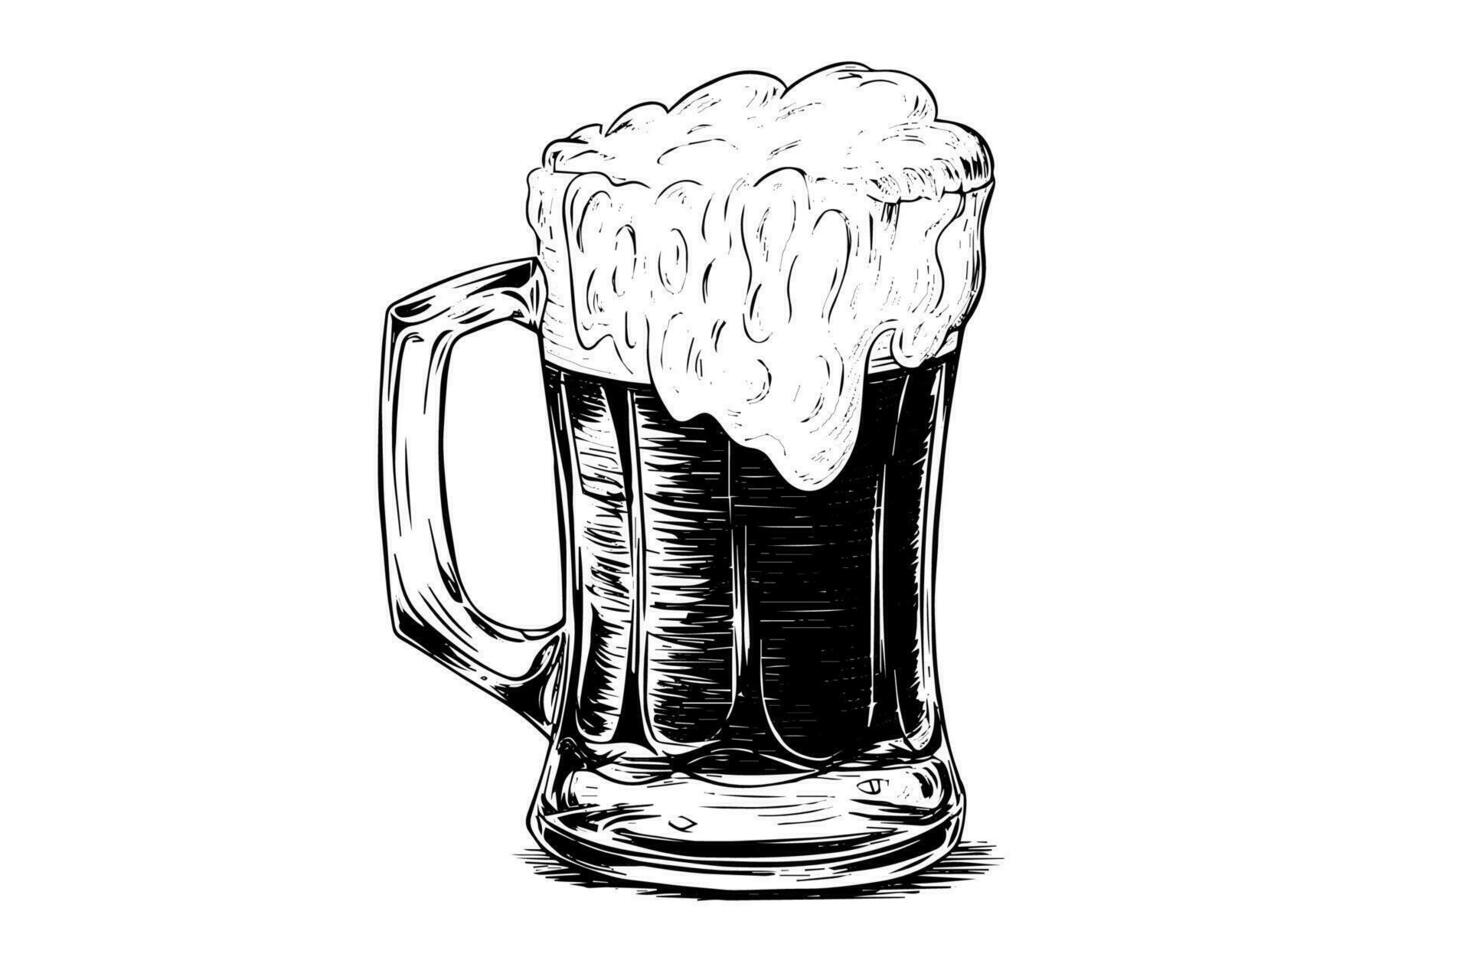 bier glas met ale en weelderig schuim.hand getrokken inkt schetsen. gravure wijnoogst stijl vector illustratie.